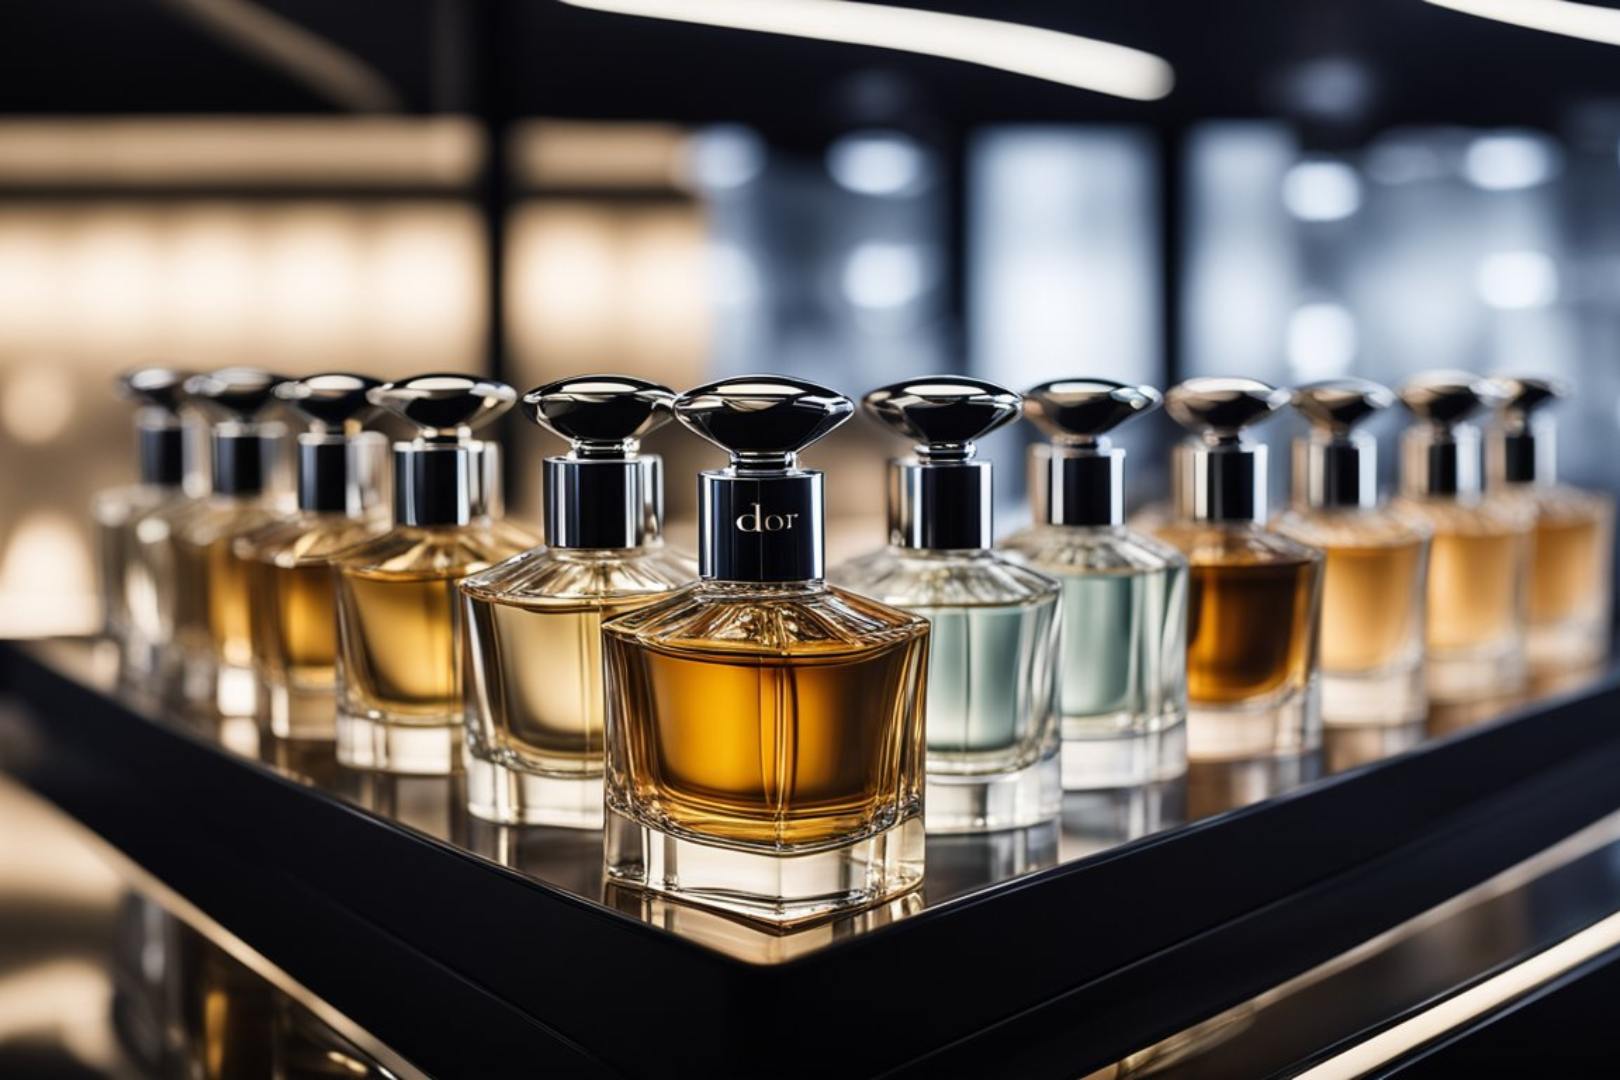 Melhores Perfumes Masculinos Dior: 7 Ótimas Opções